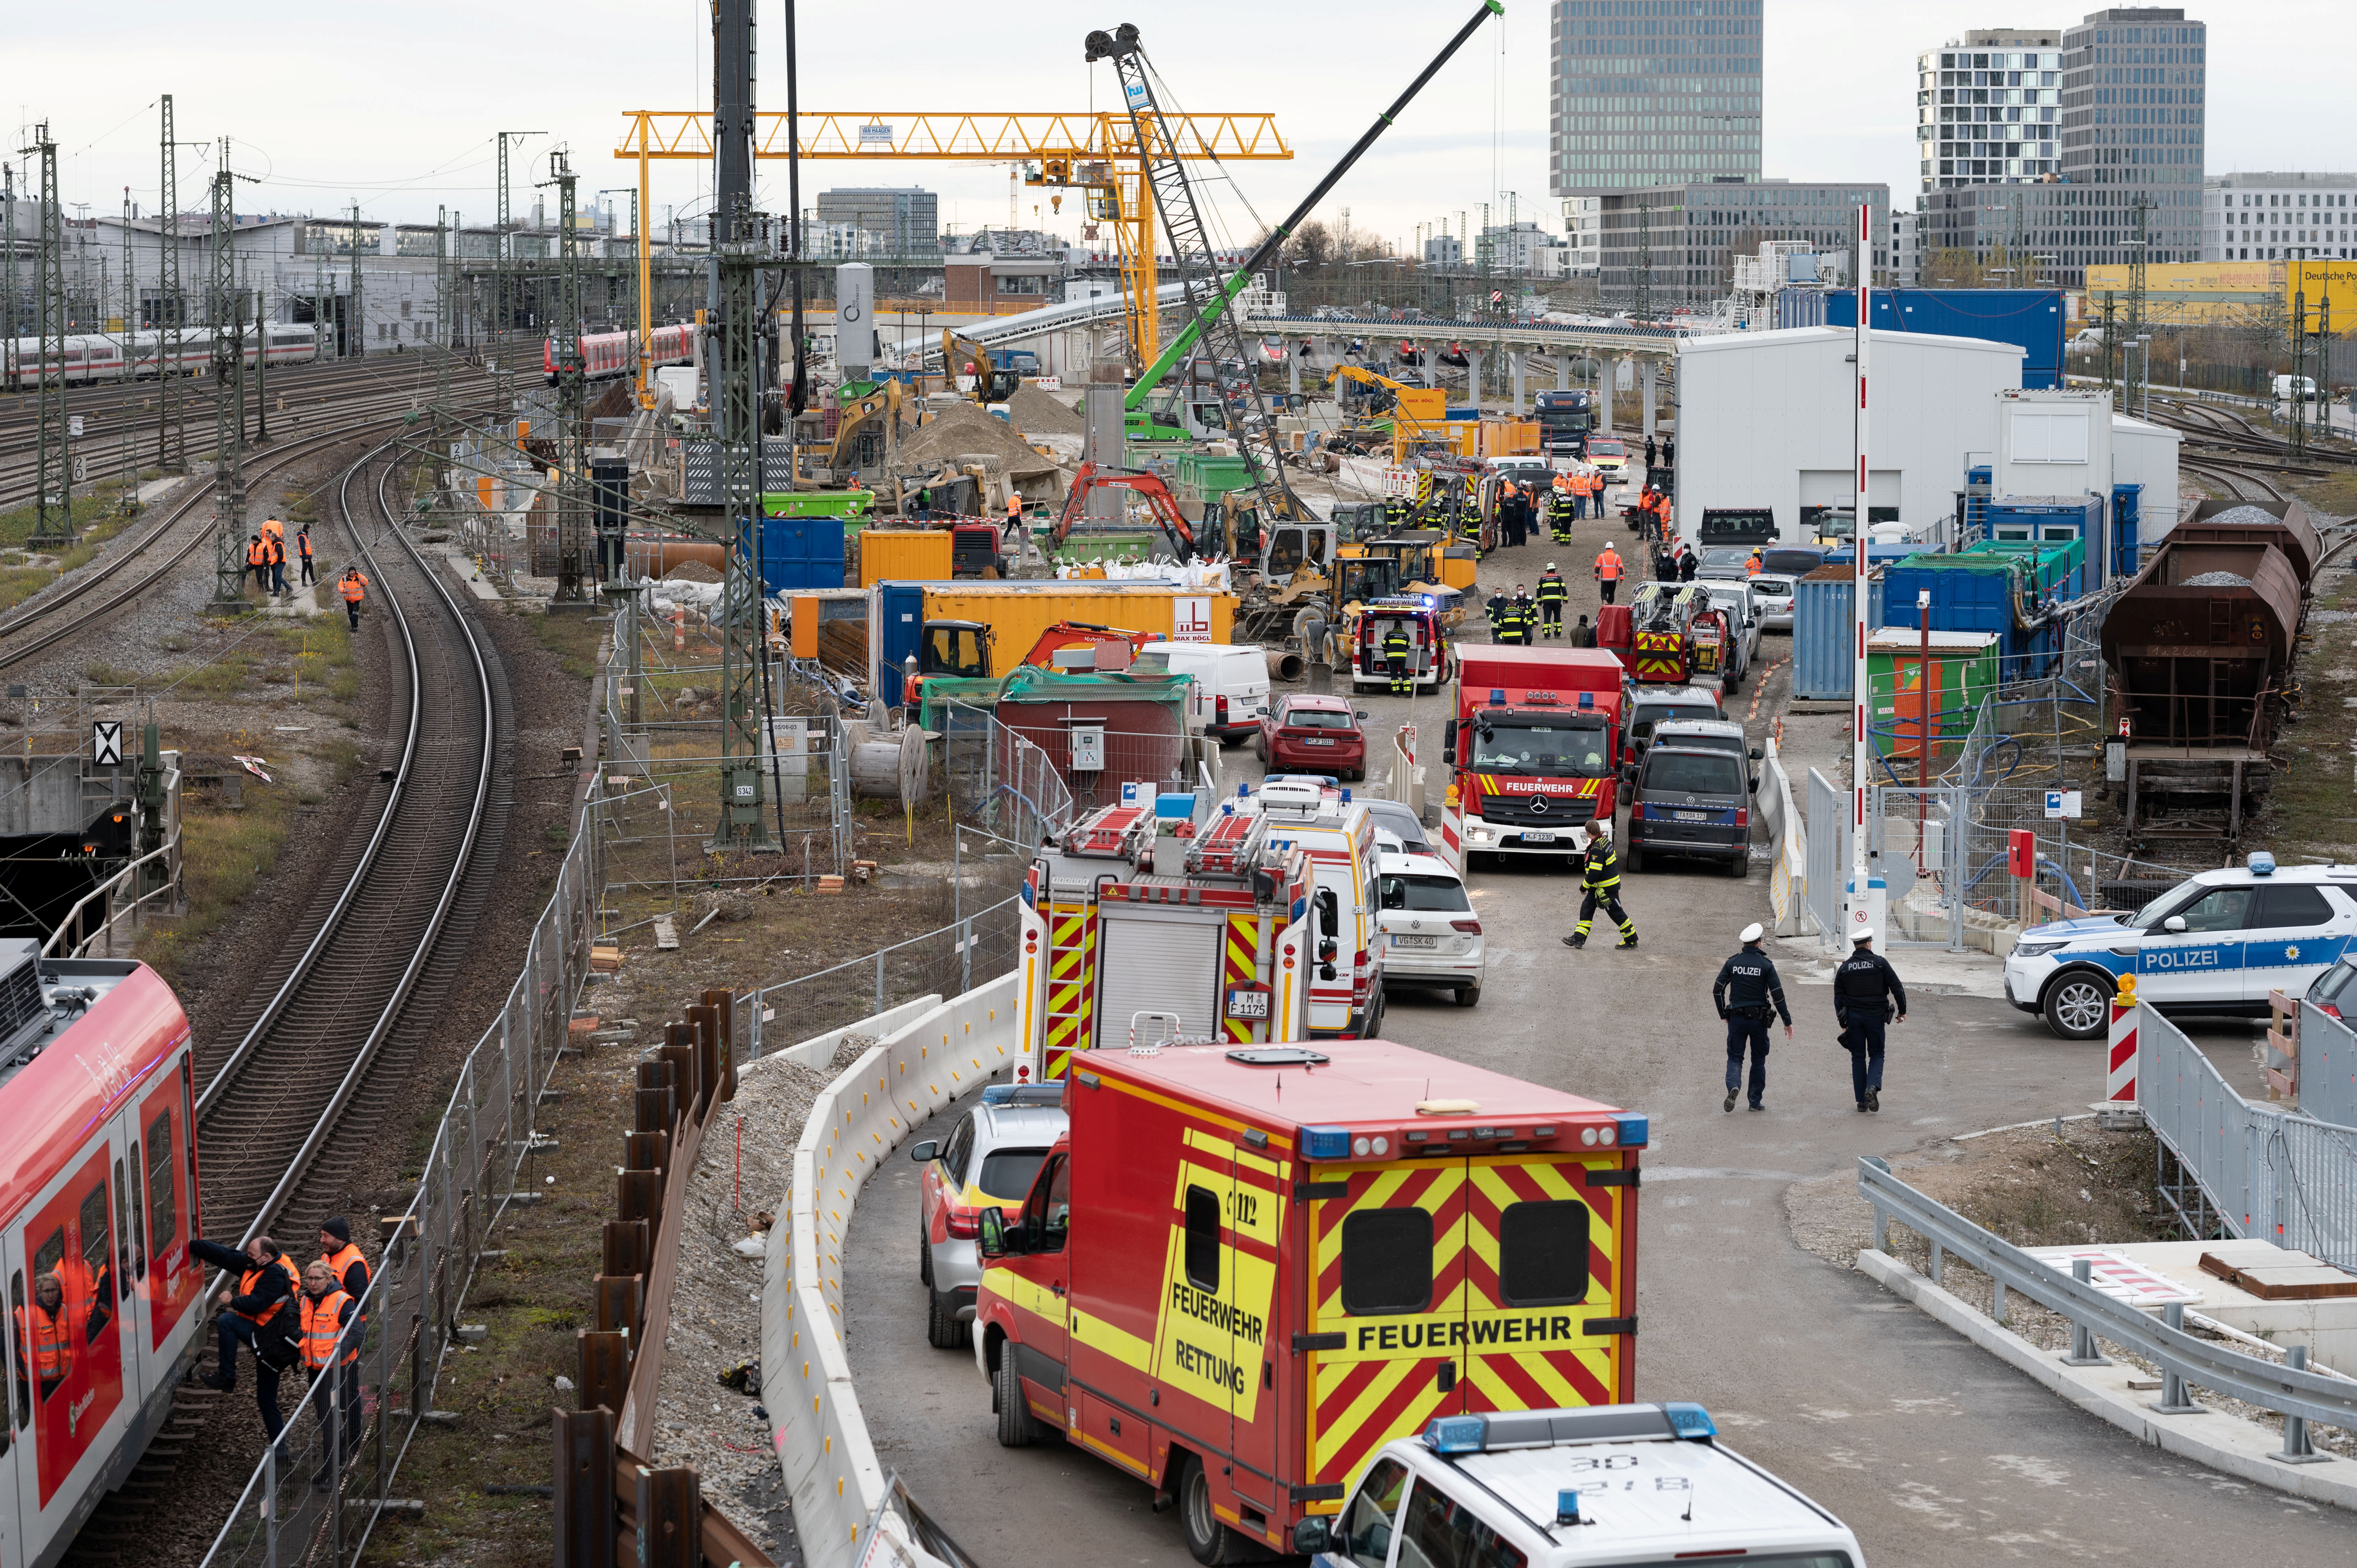 Three injured after explosion in Munich